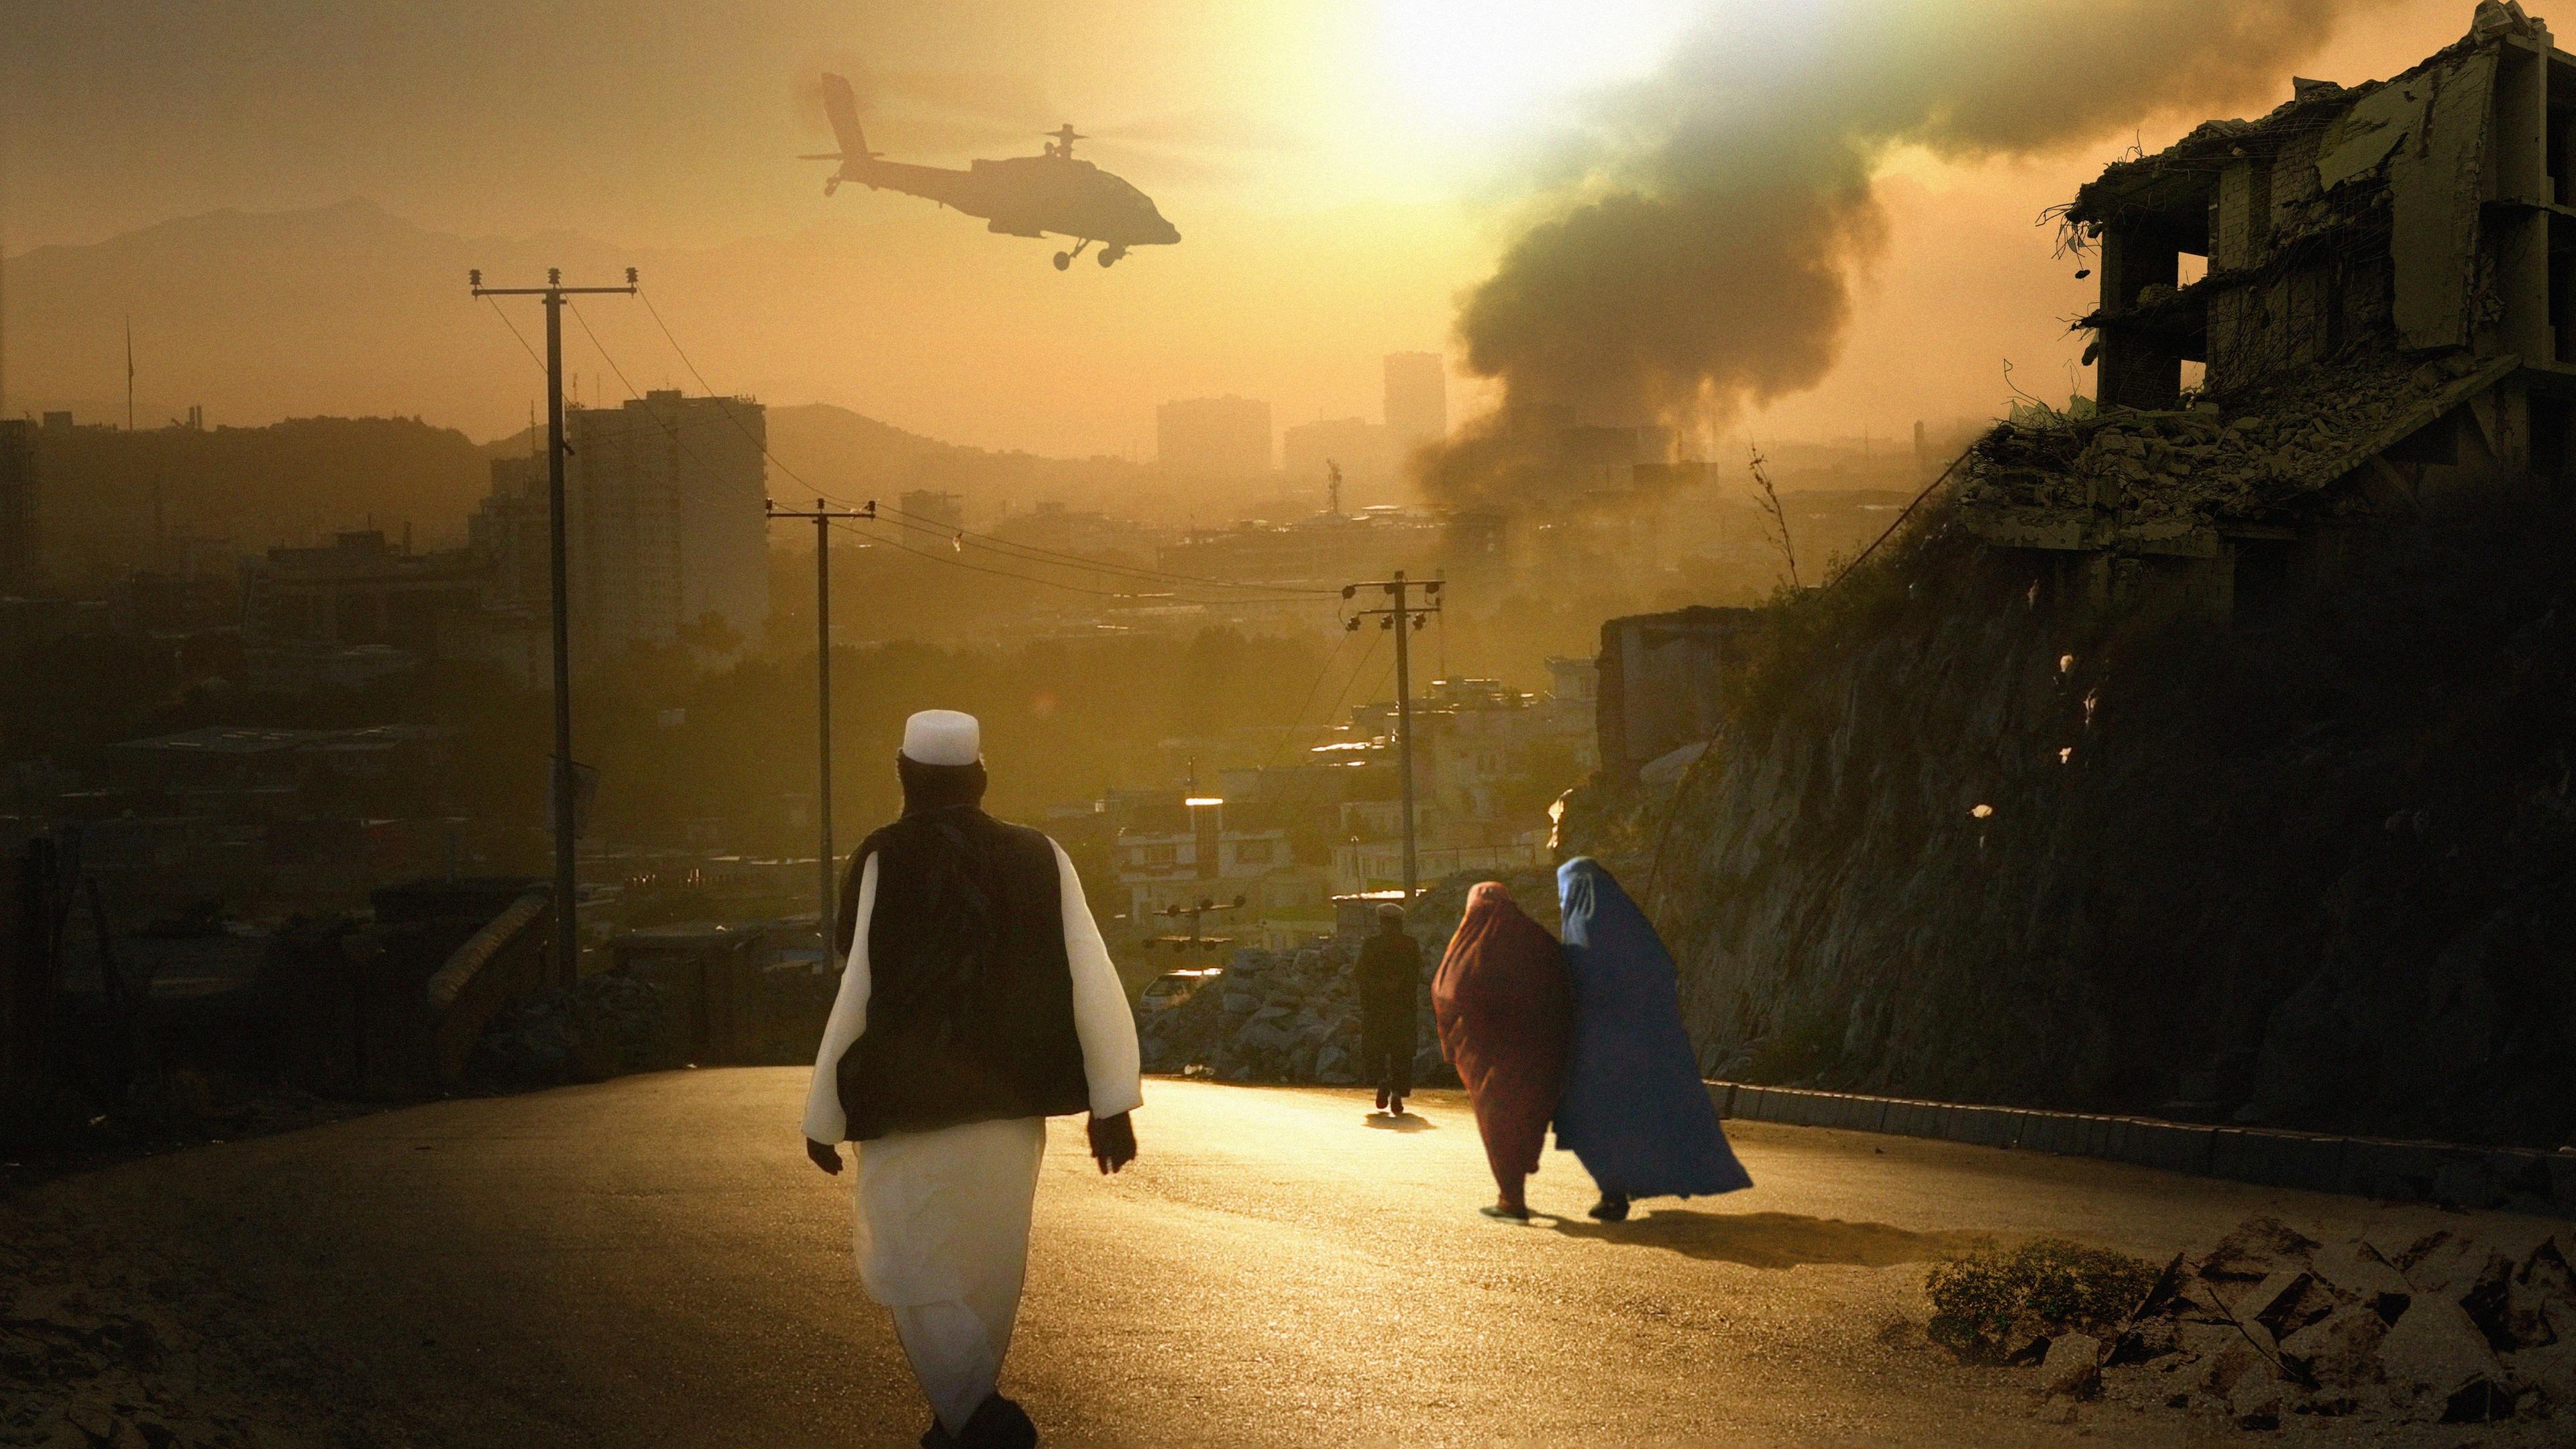 Zu sehen ist ein afghanisches Dorf im Sonnenuntergang, aus dem Rauch aufsteigt. Ein Helikopter fliegt über das Dorf hinweg.